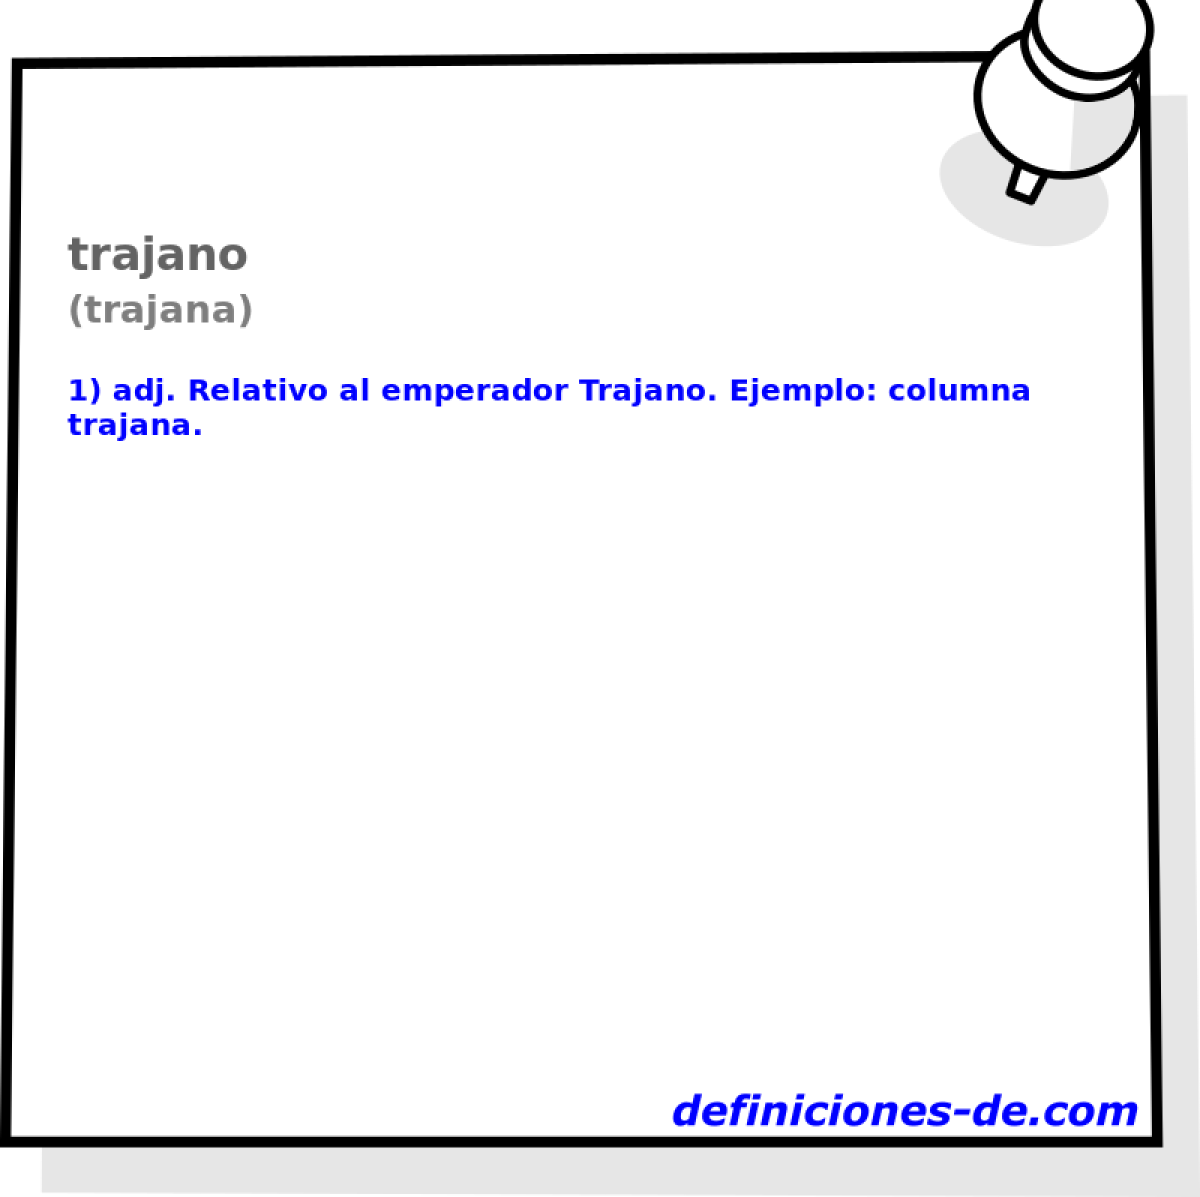 trajano (trajana)